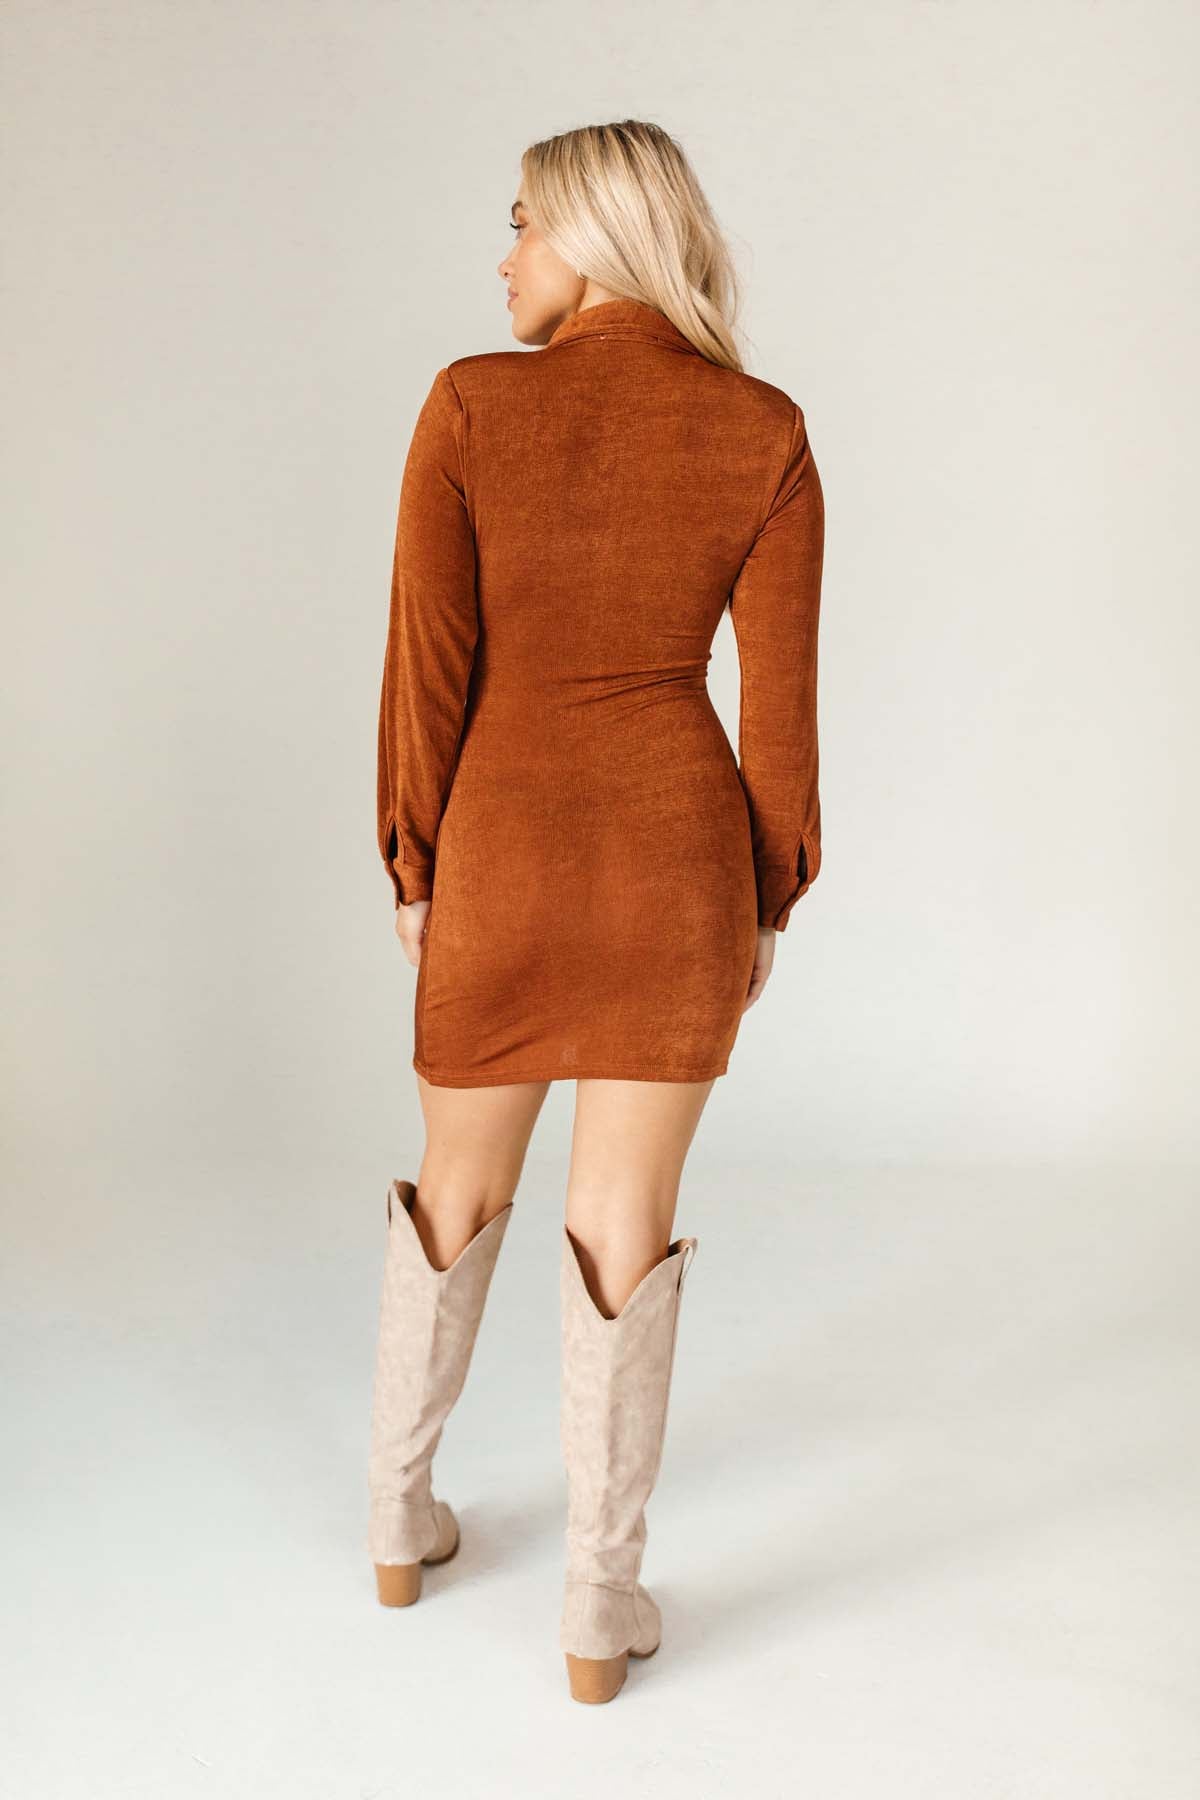 Erica Dress Rust, alternate, color, Rust